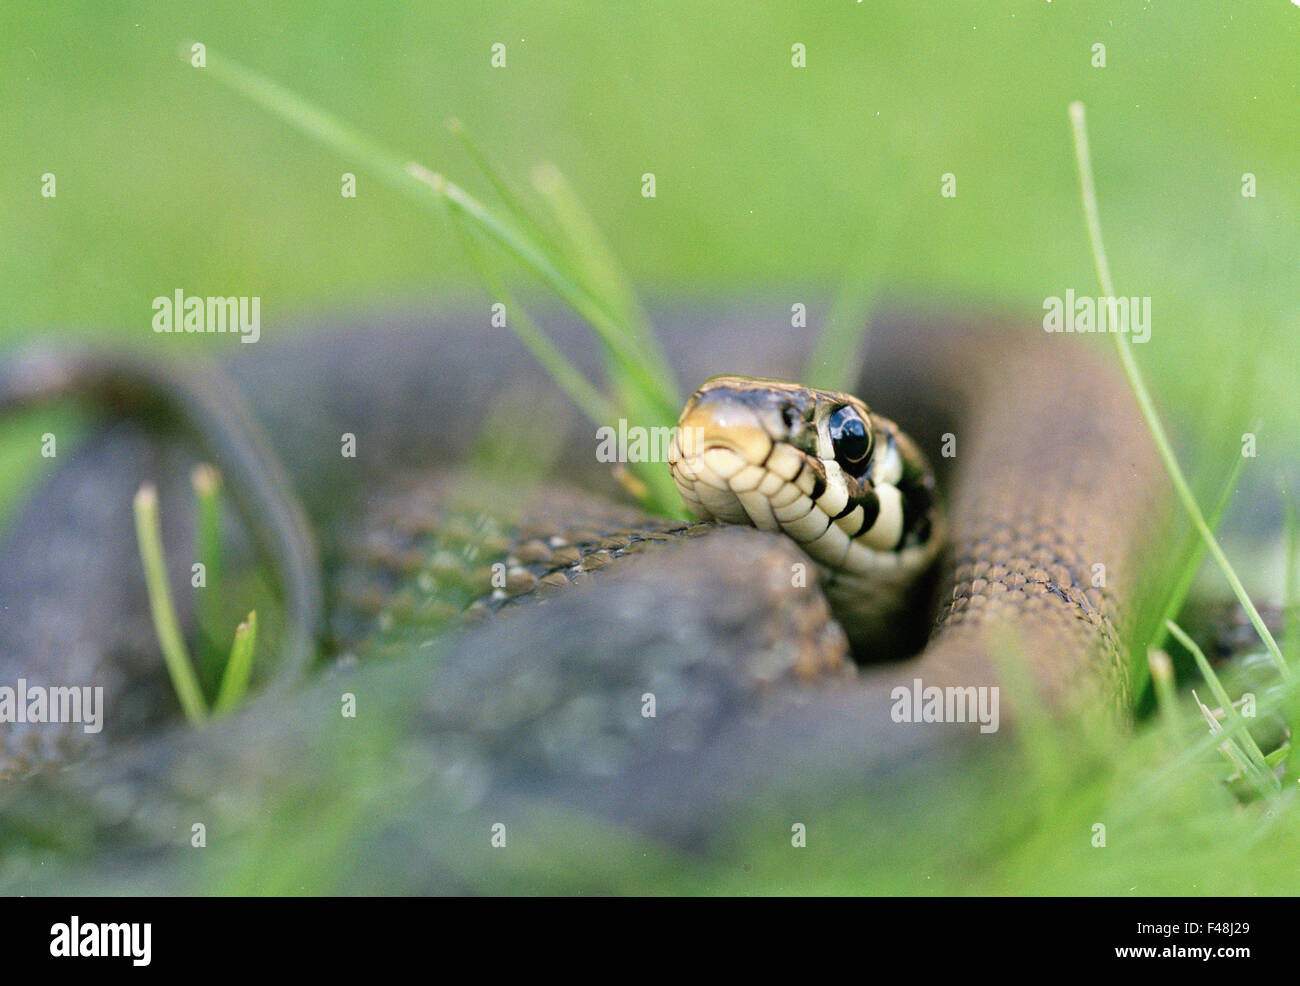 Les amphibiens black close-up image de couleur jour l'herbe grass snake Haninge gris horizontal tête animaux invertébrés lying outdoors Banque D'Images